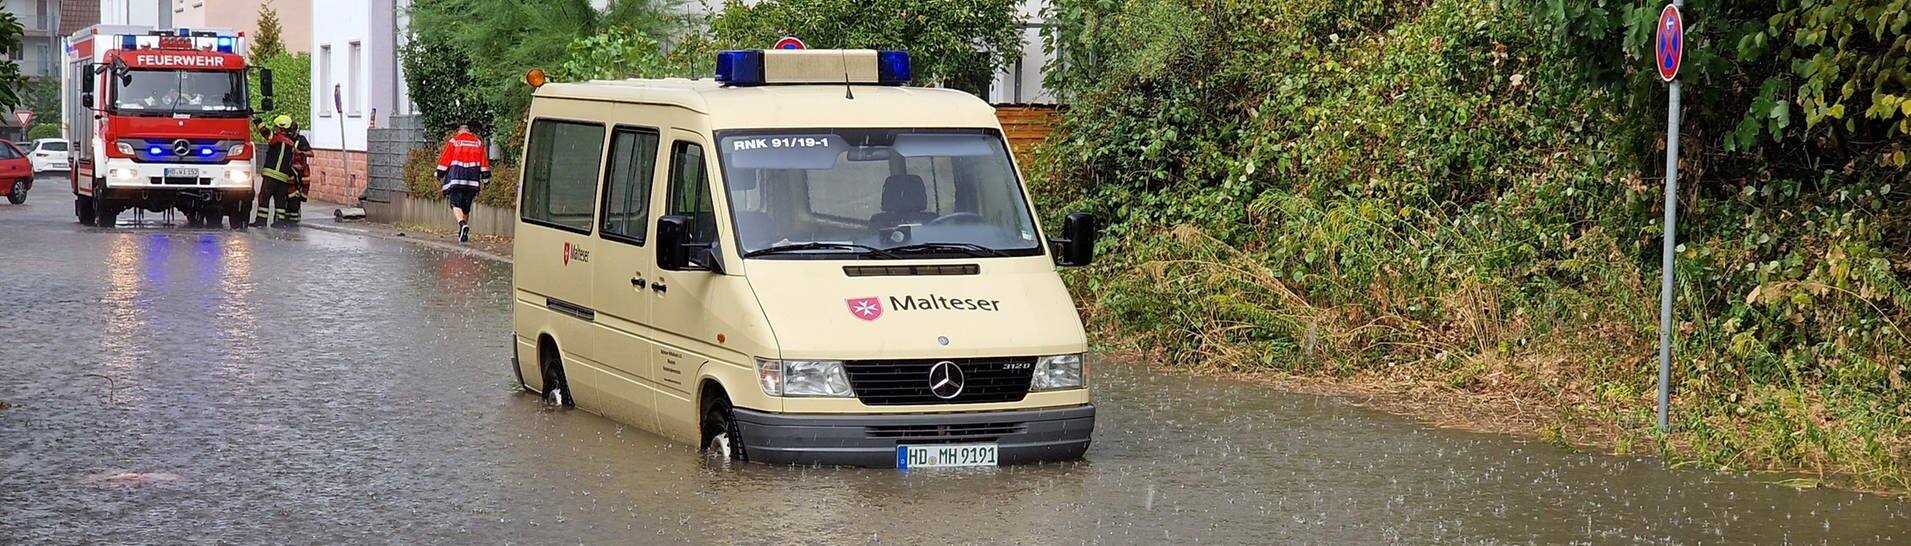 Unwetter und Gewitter sorgen am Freitag für Überflutungen in den Straßen, die sogar der Einsatz der Rettungskräfte behindern.  (Foto: dpa Bildfunk, picture alliance/dpa/Einsatz-Report24 | Marvin Riess)